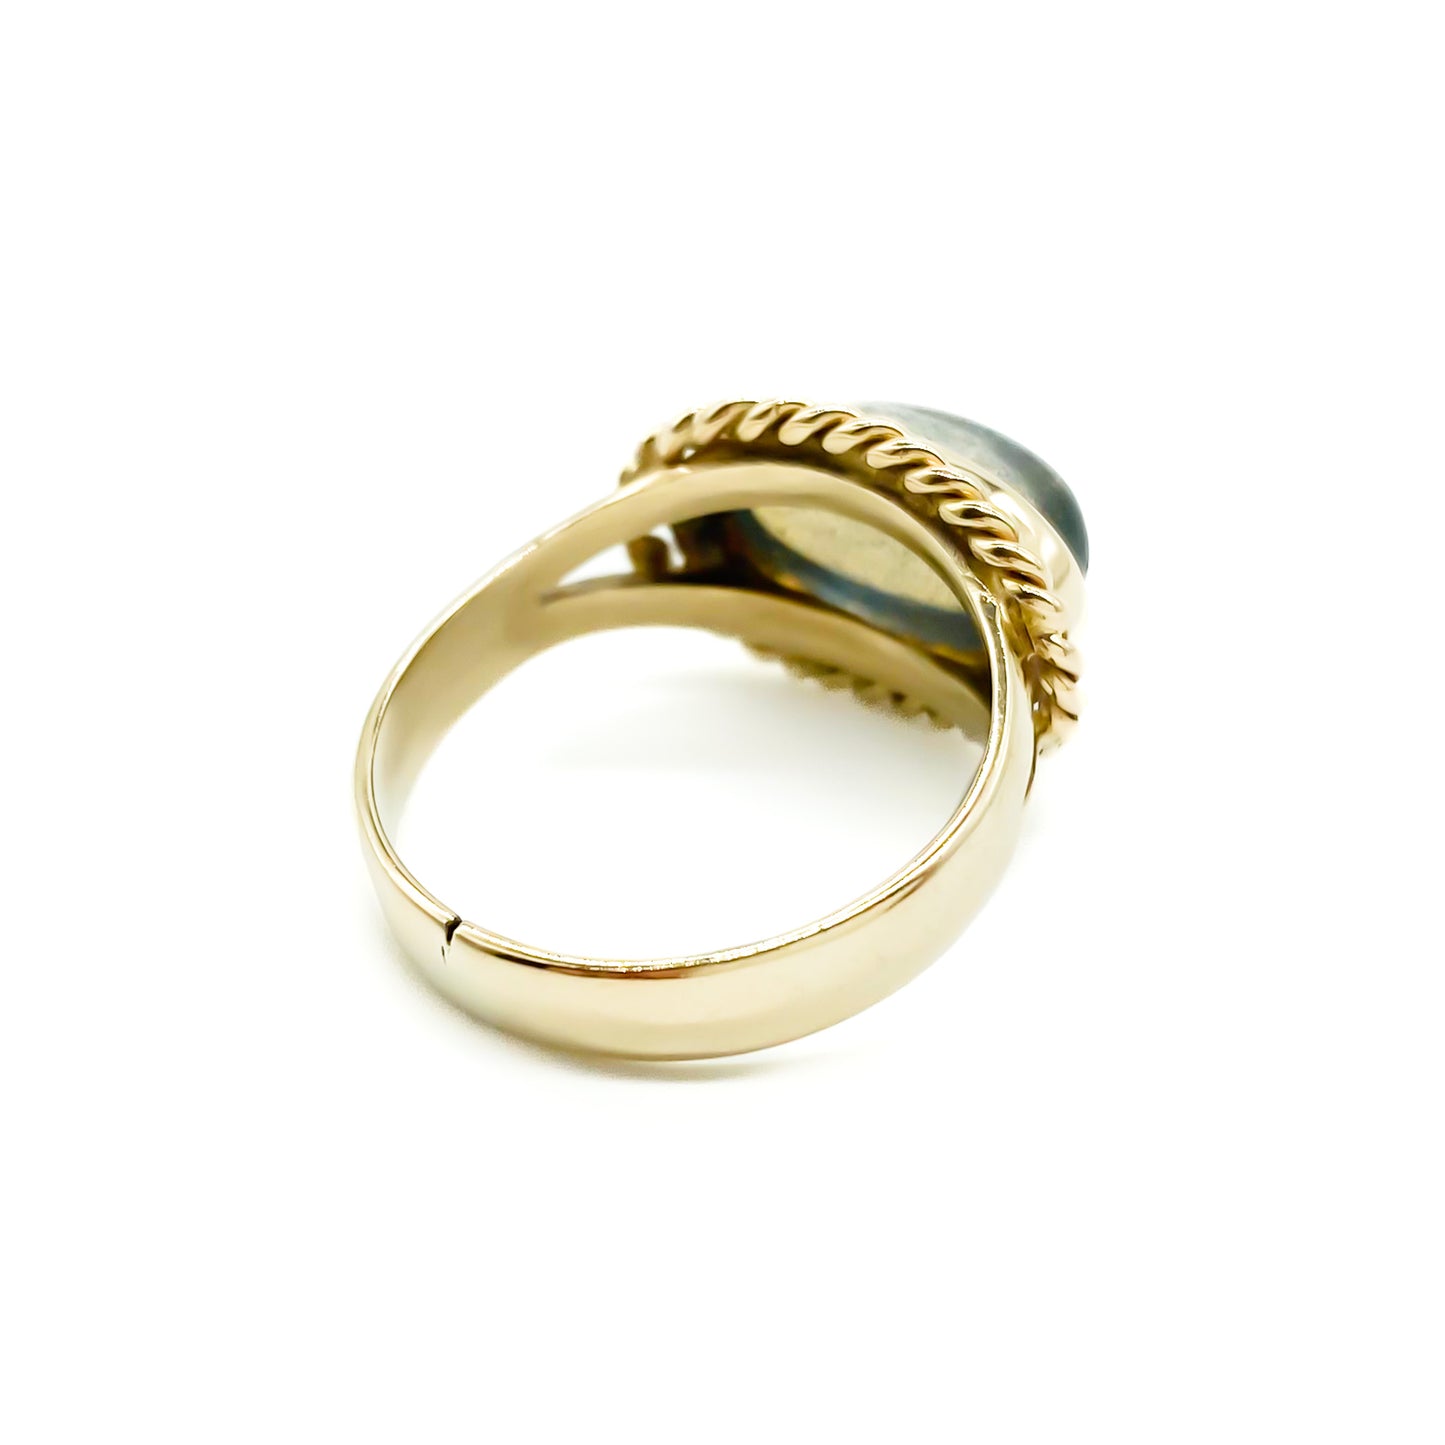 9ct Gold Labradorite Ring